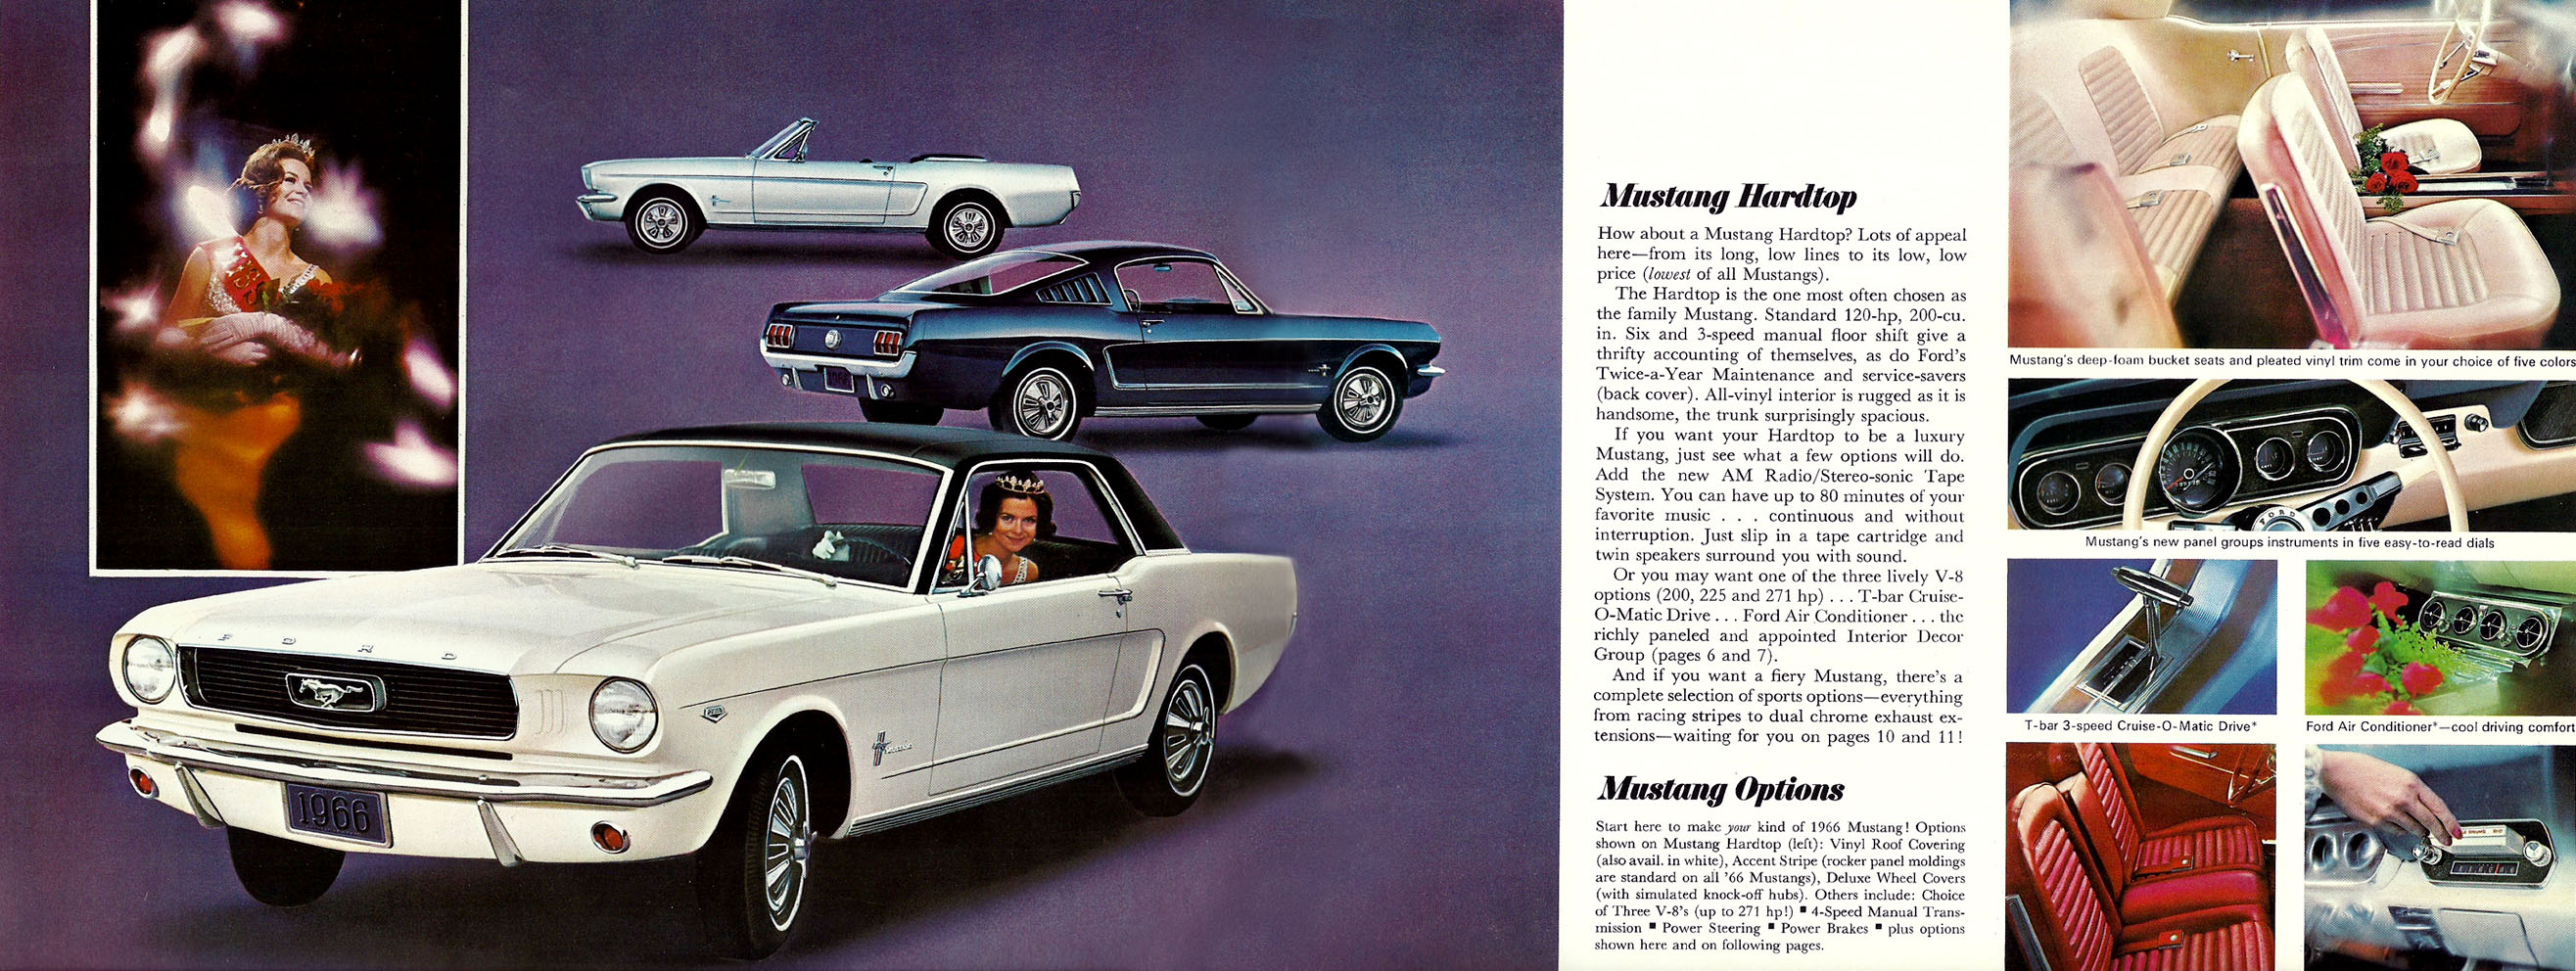 1966 Mustang Prospekt Seite 4-5